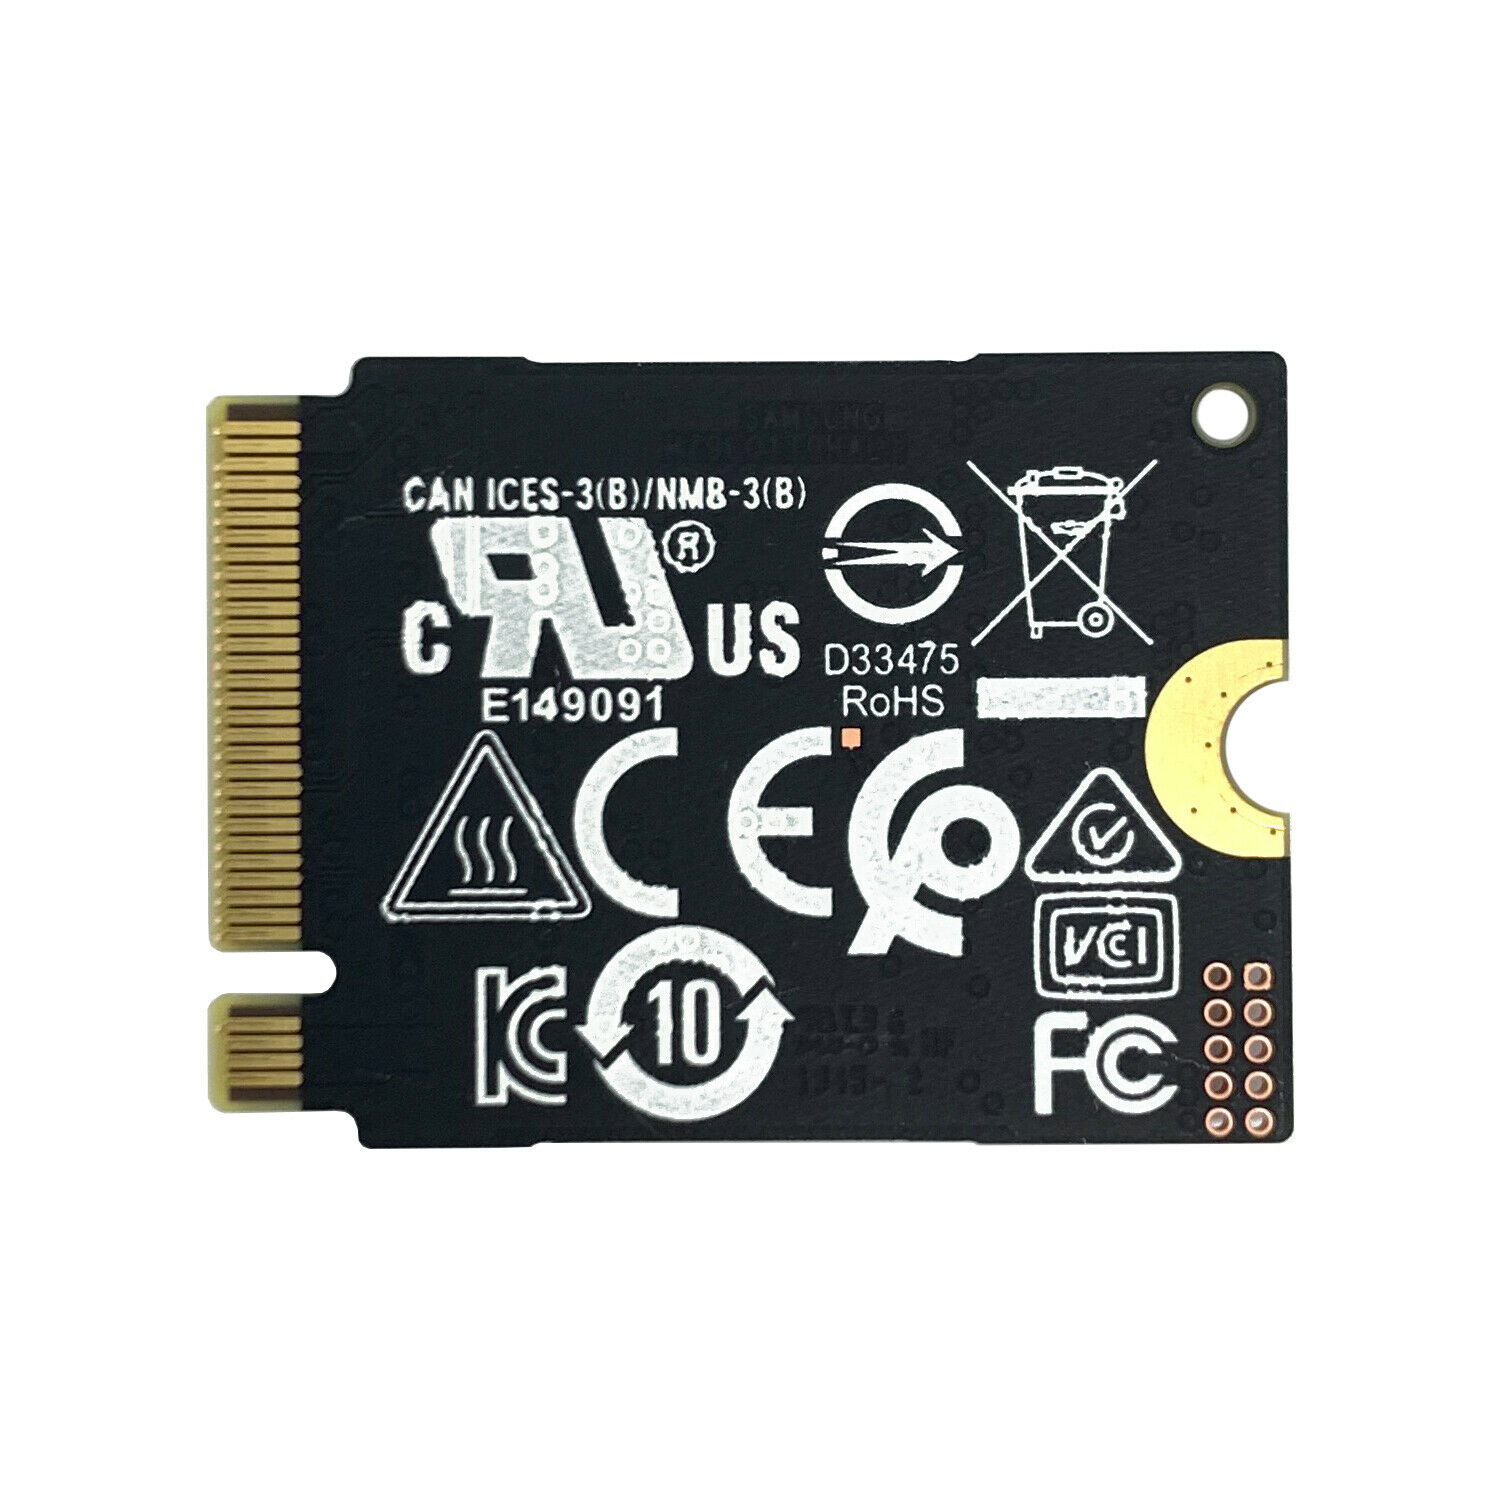 DISQUE DUR SSD SAMSUNG PM991 / NVMe